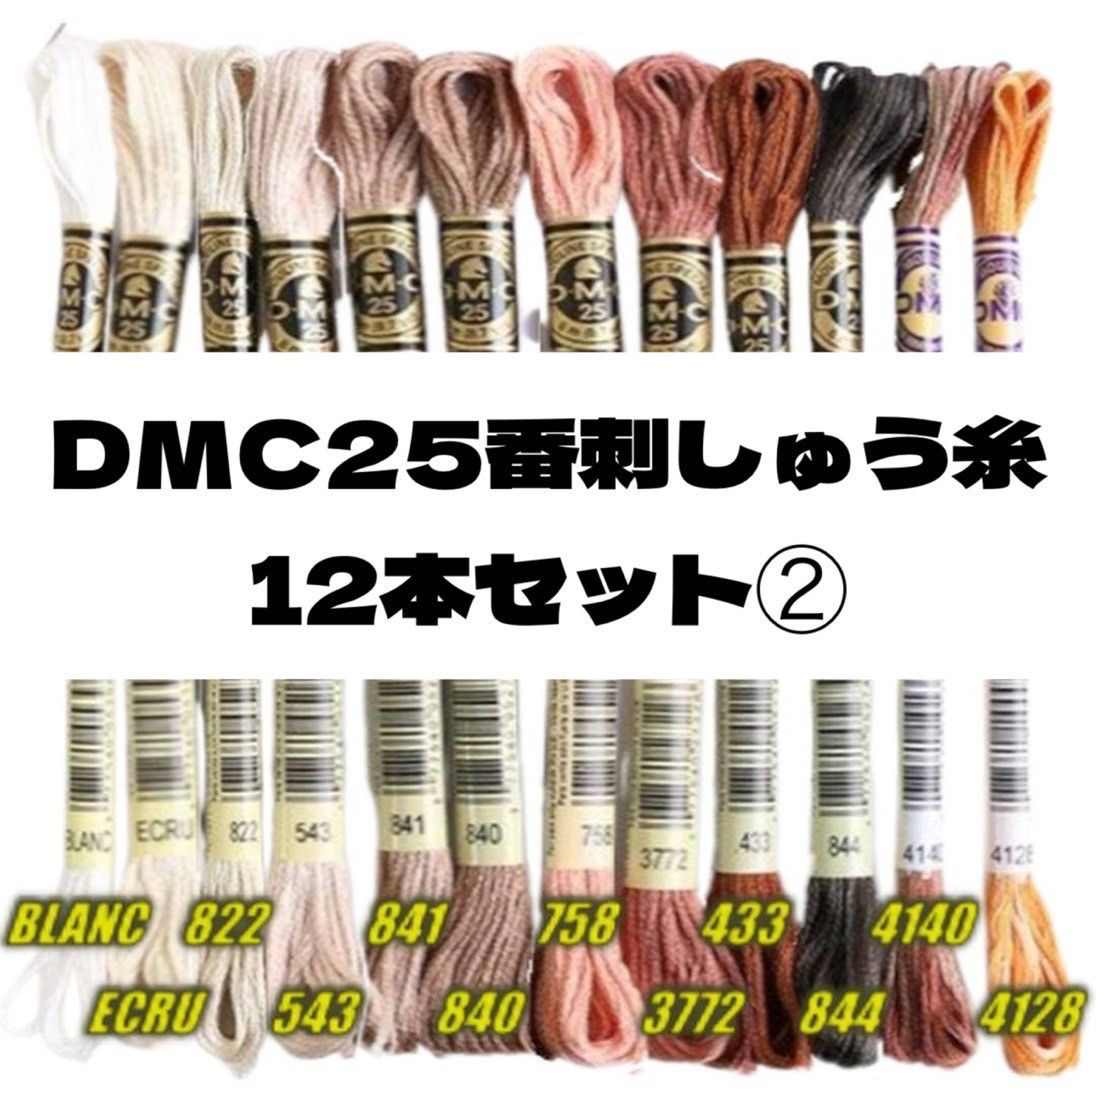 DMC25 刺しゅう糸 #25  12本セット③